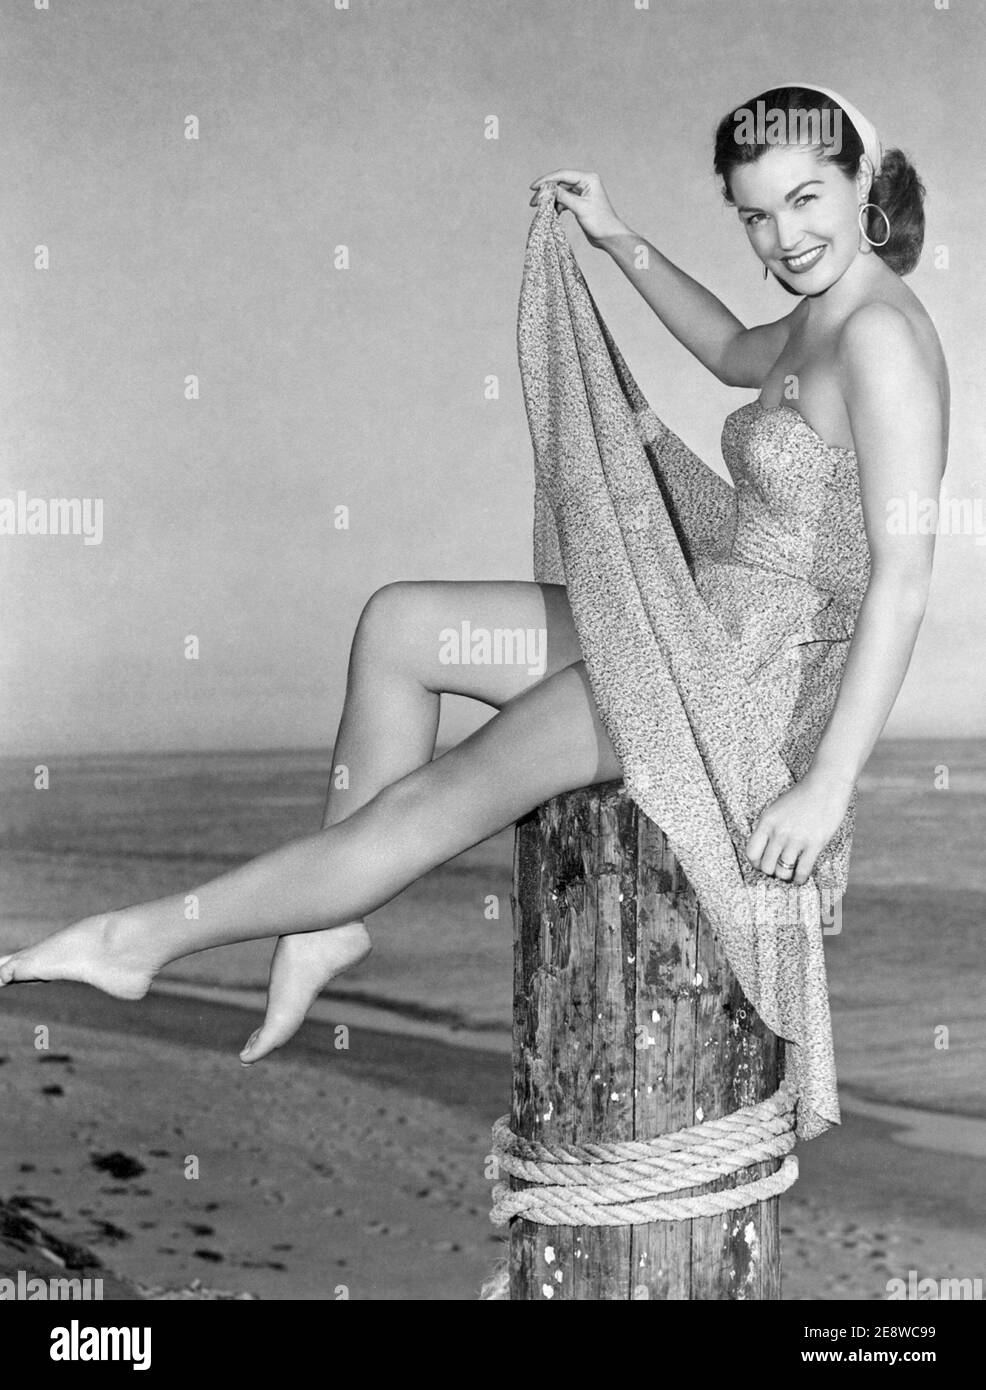 Esther Williams. Amerikanische Schwimmerin und Schauspielerin geboren am 8. august 1921, gestorben am 6. juni 2013. Stockfoto